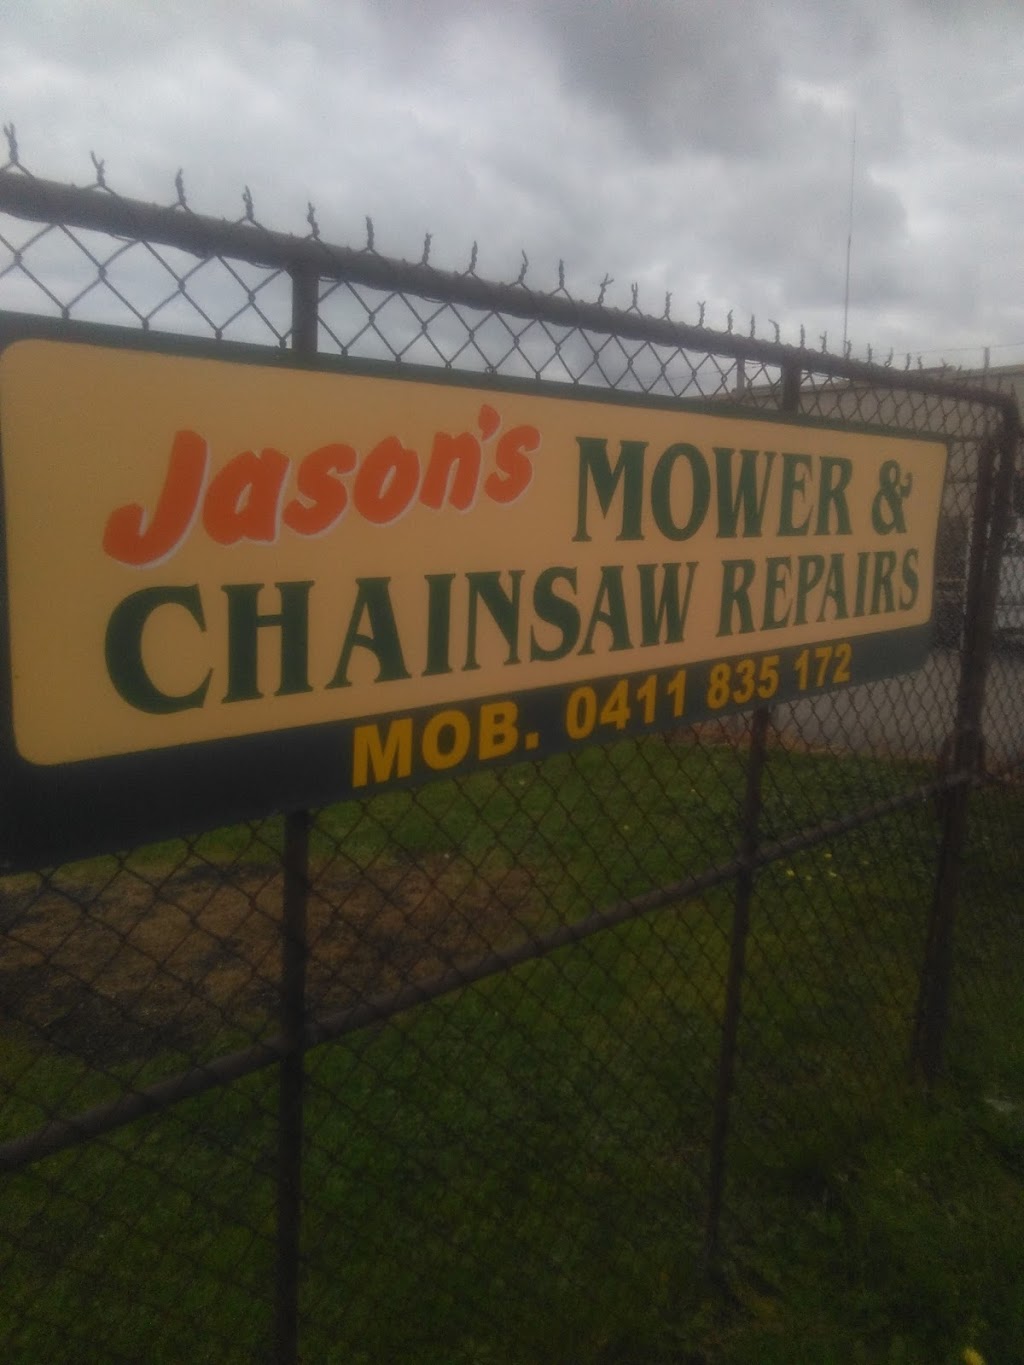 Jasons Mower & small engine repairs Mower wreckers | 1 Kirwin Rd, Morwell VIC 3840, Australia | Phone: 0411 835 172